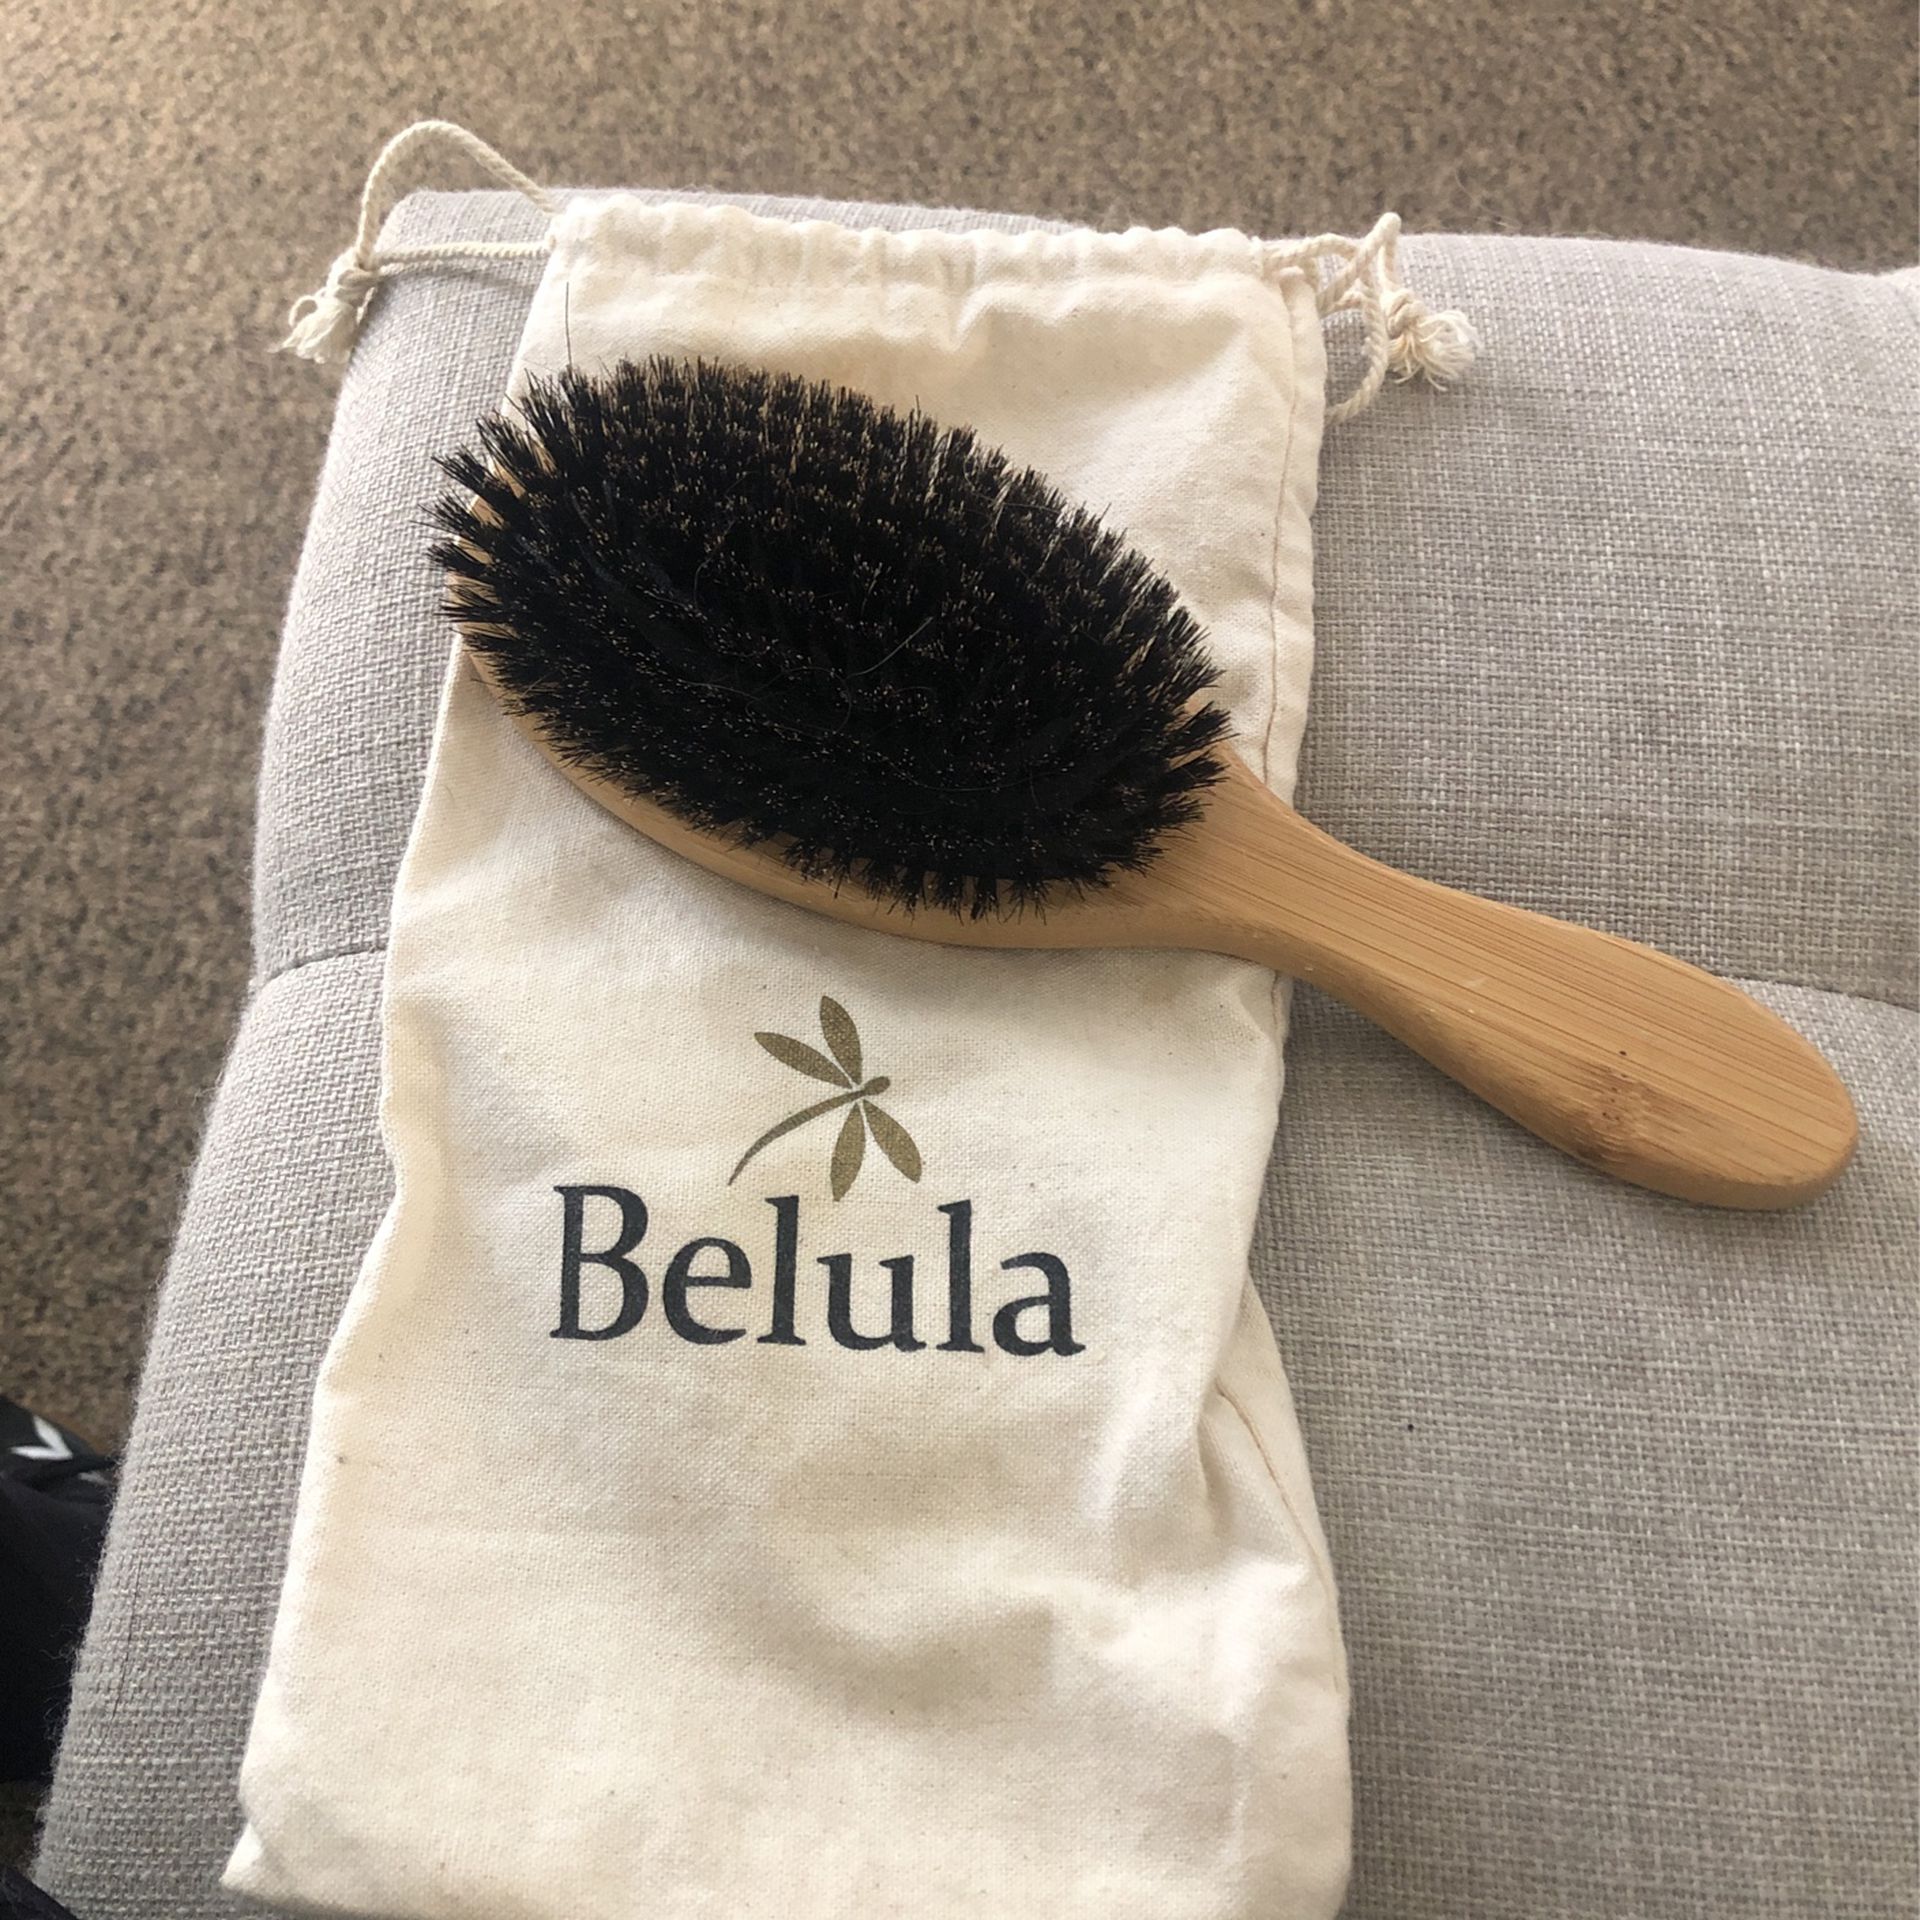 Belula Soft Bristle Hair Brush